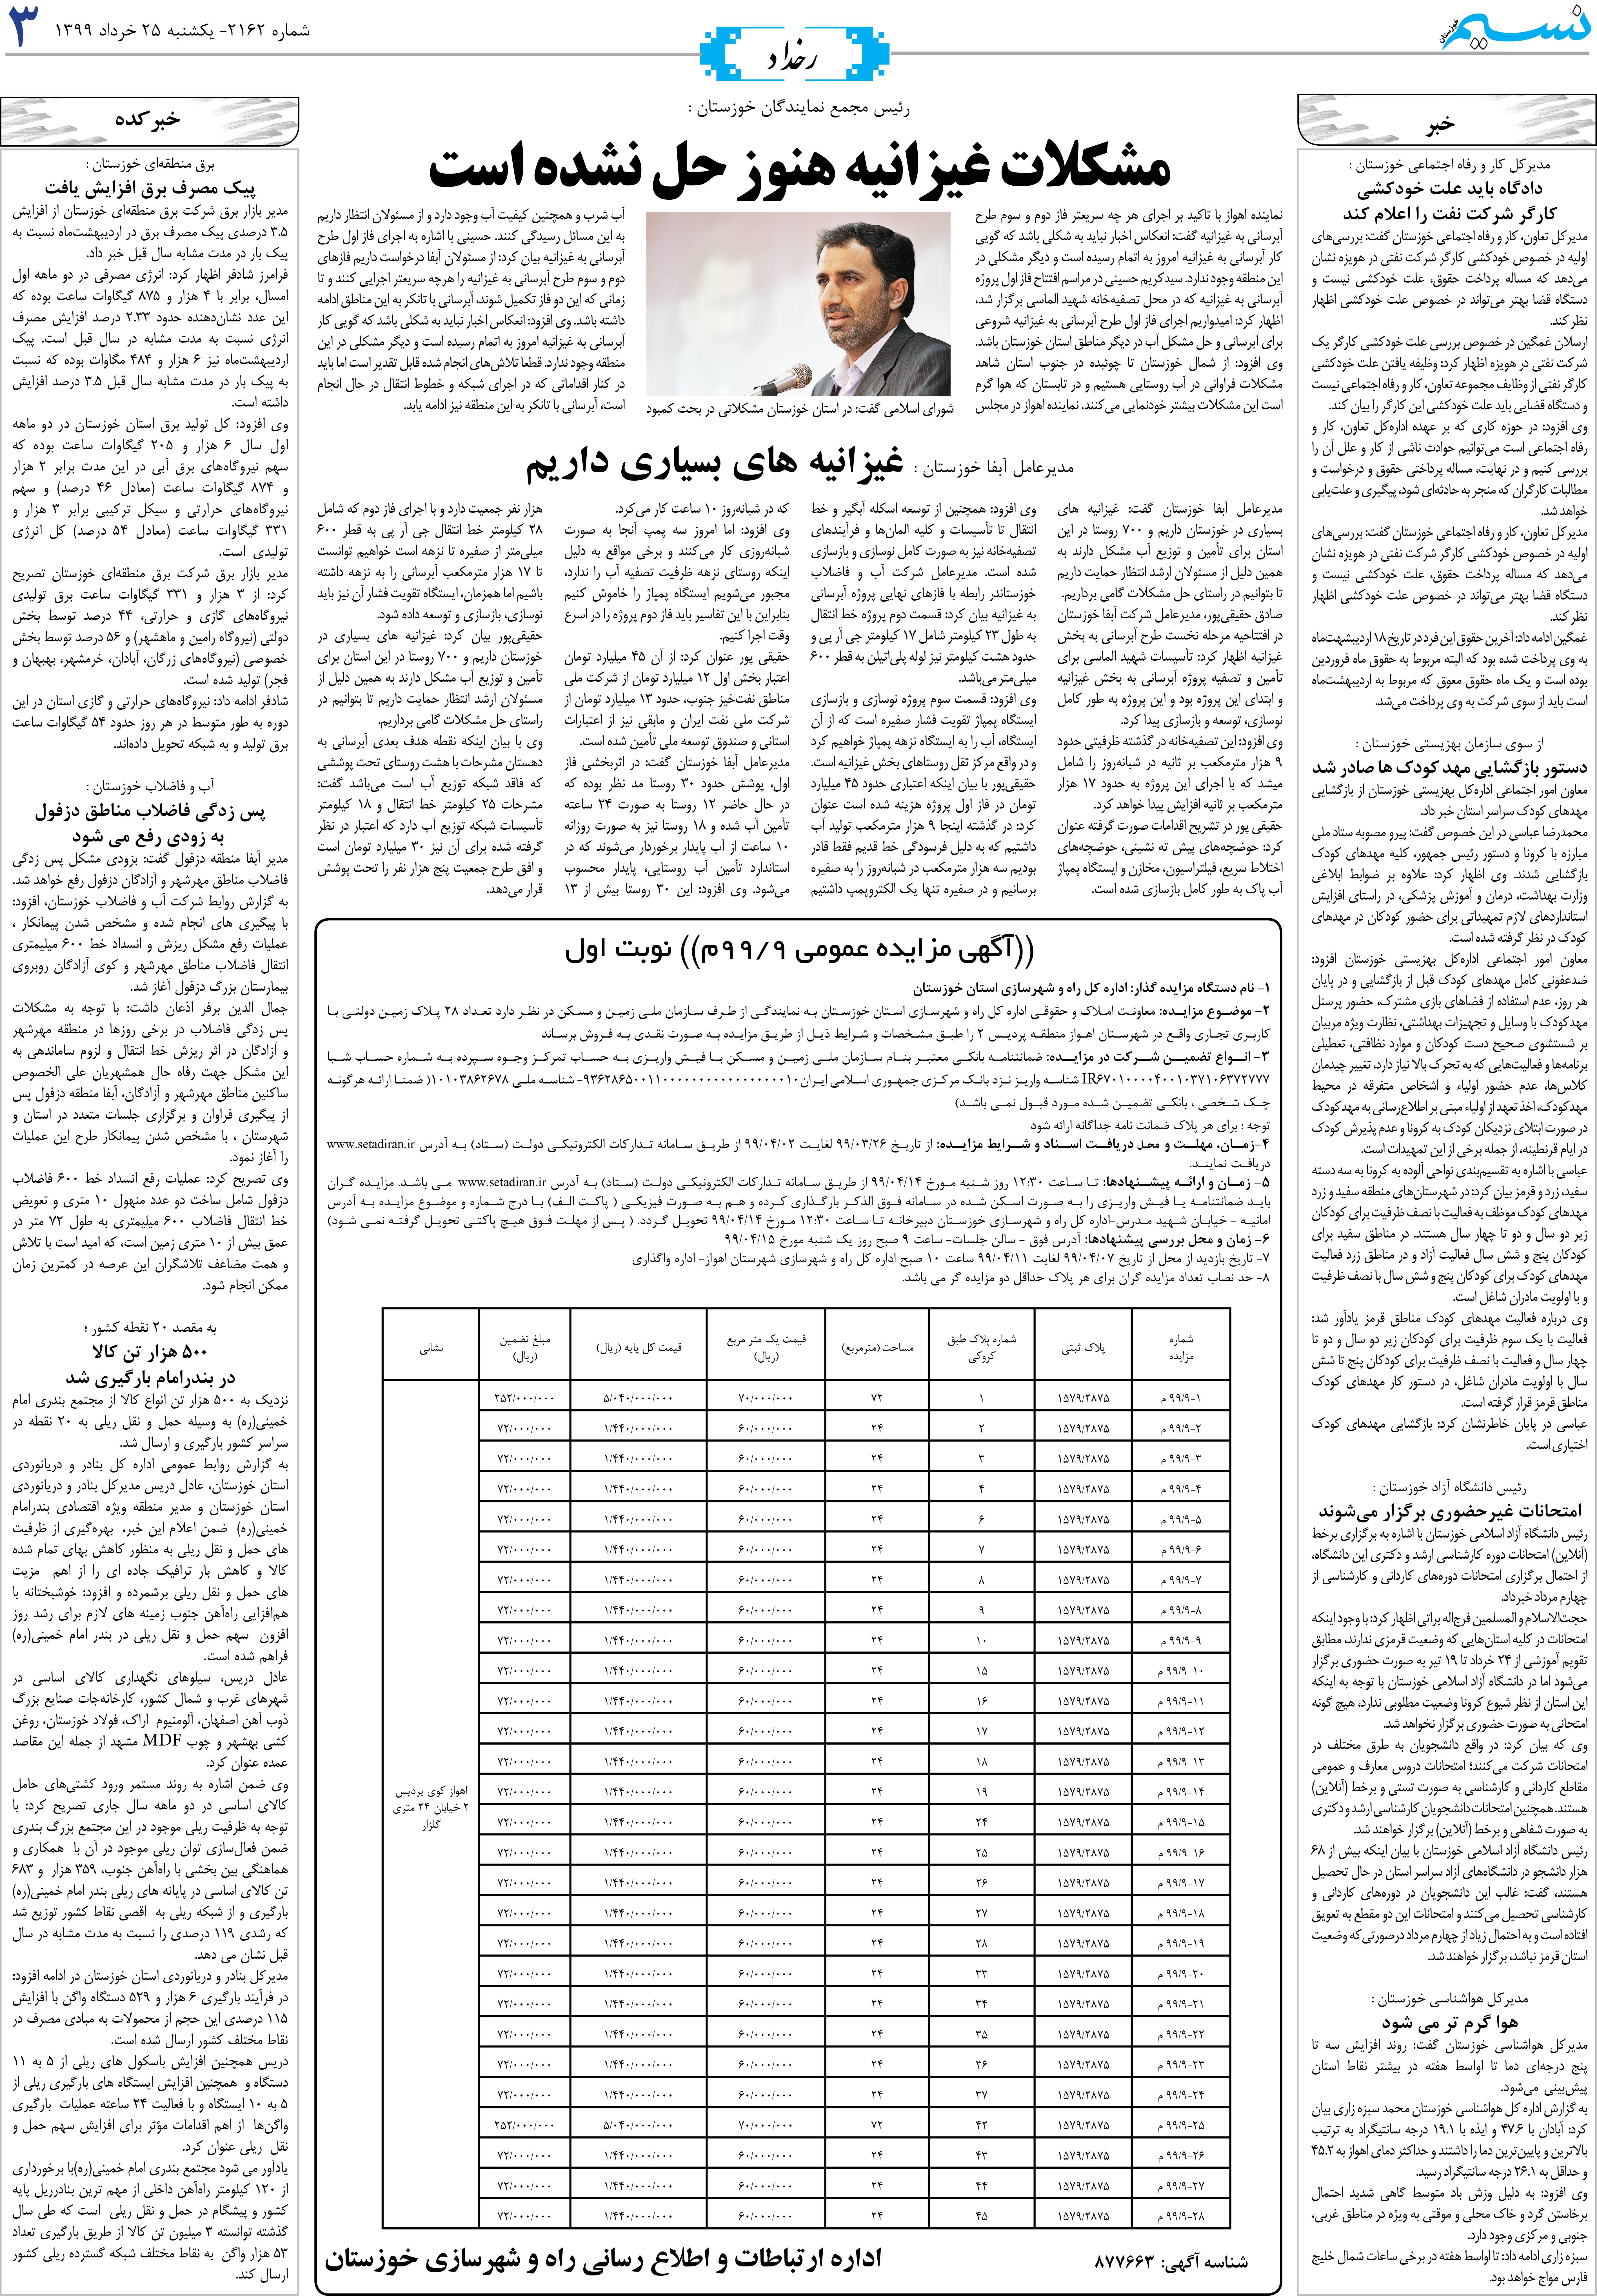 صفحه رخداد روزنامه نسیم شماره 2162